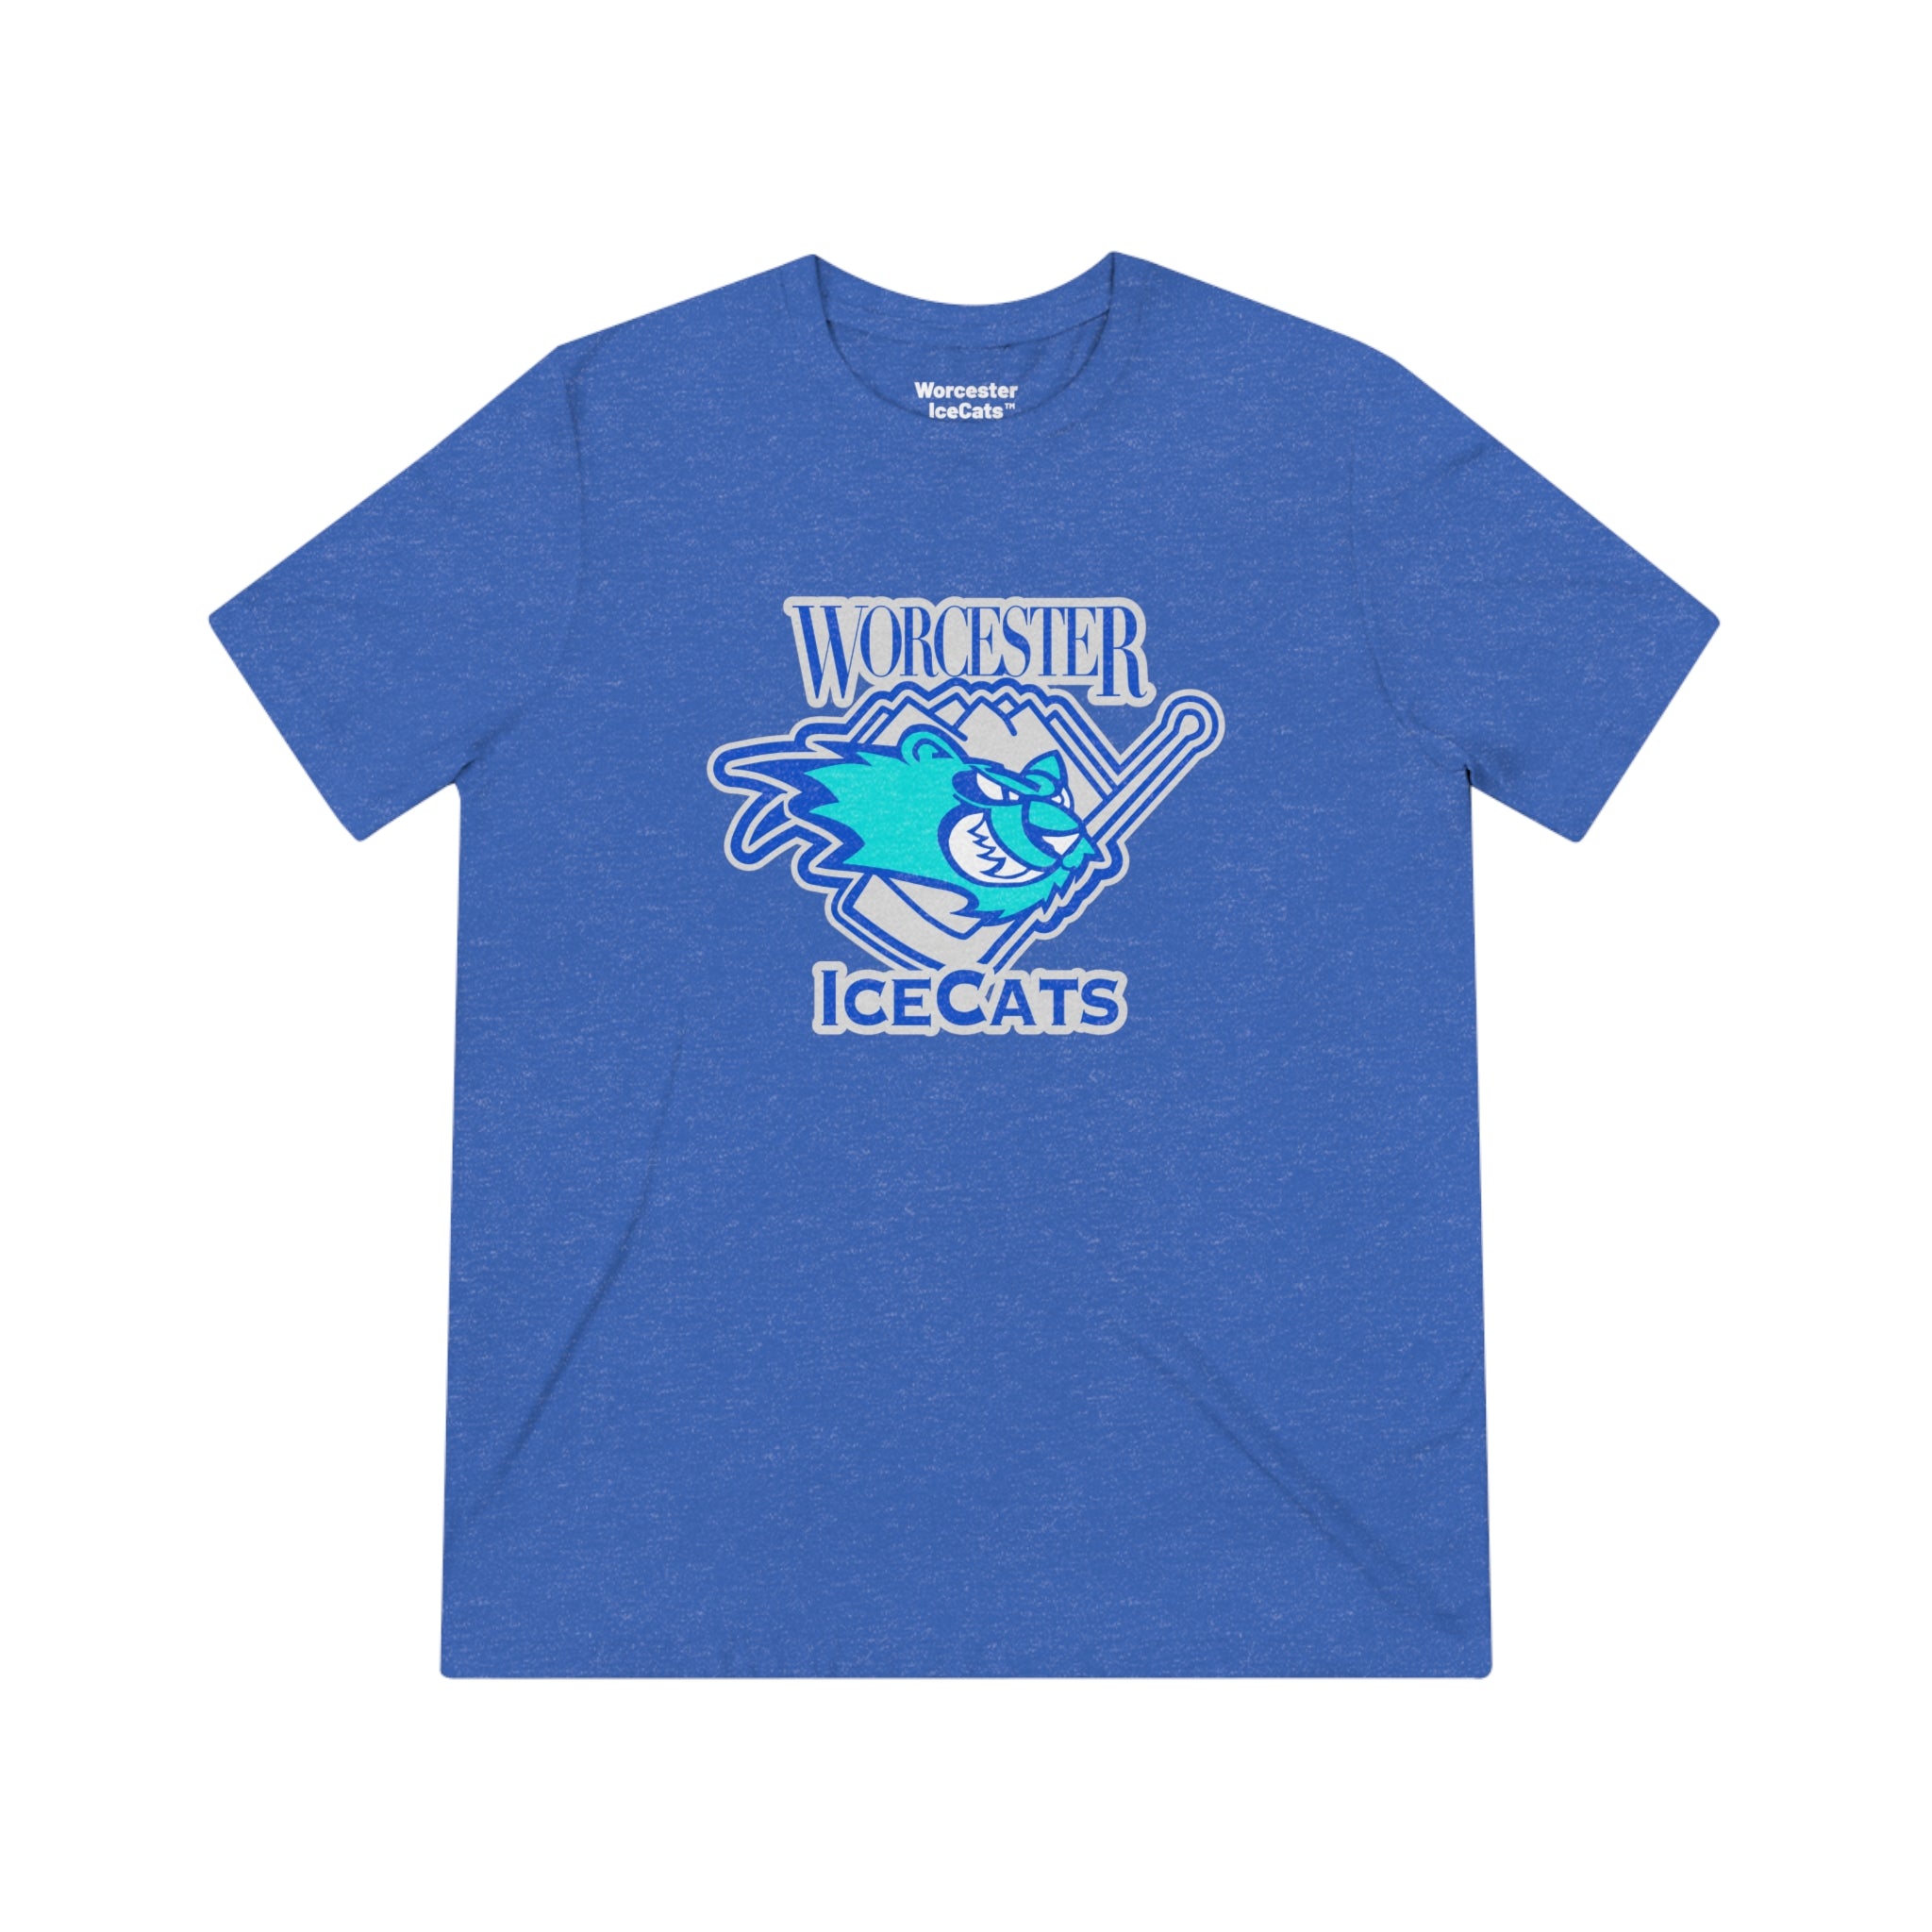 Worcester IceCats™ T-Shirt (Tri-Blend Super Light)